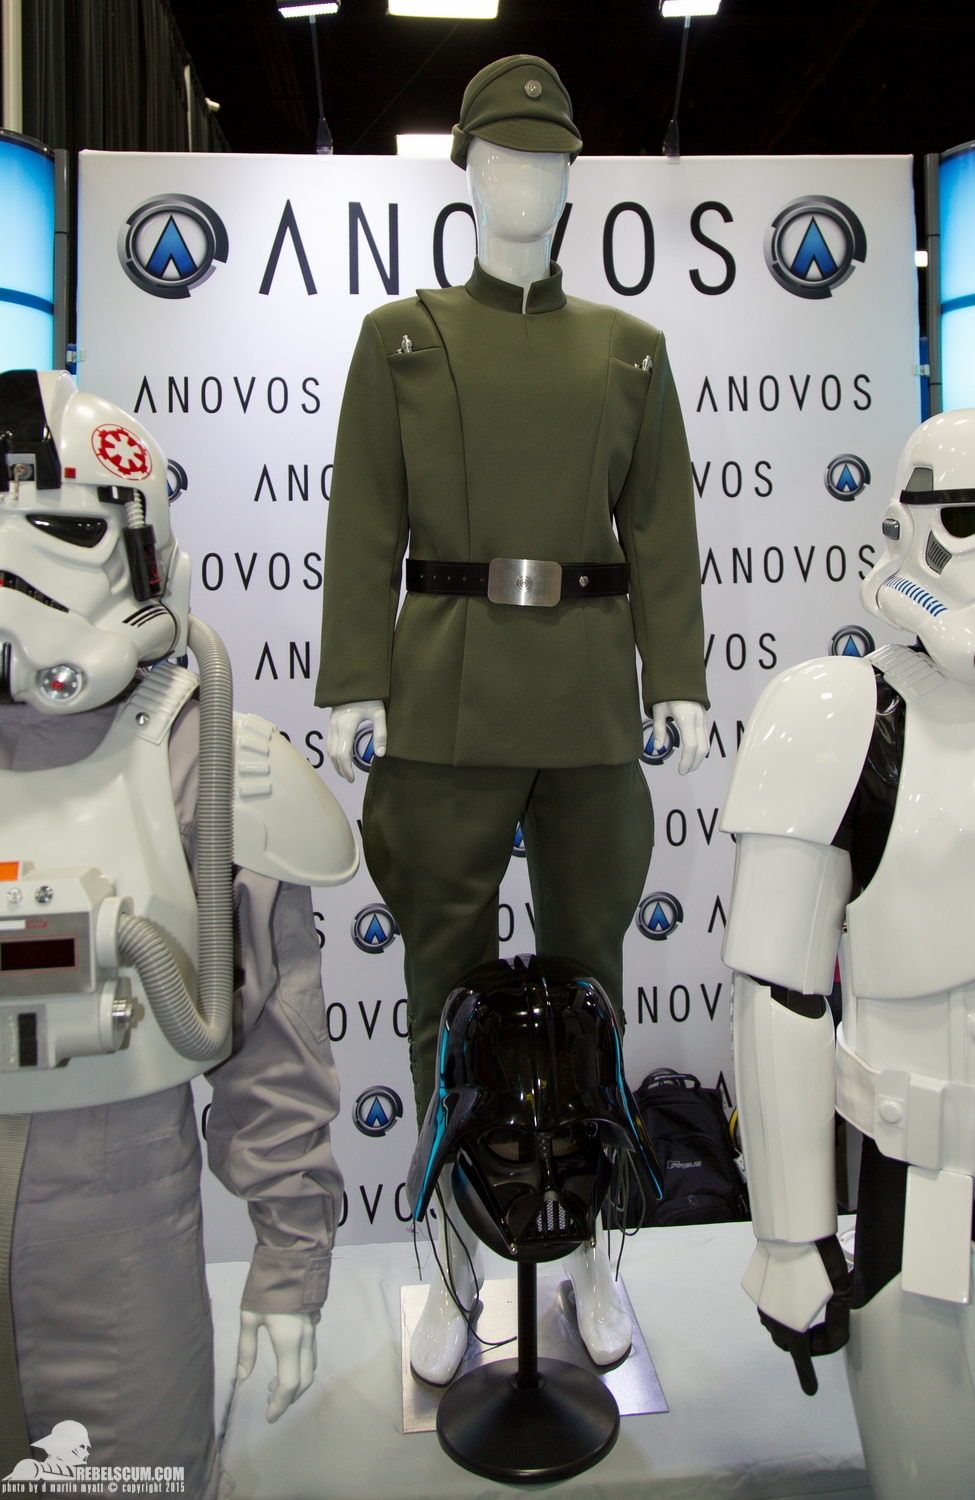 ANOVOS-2015-San-Diego-Comic-Con-SDCC-019.jpg